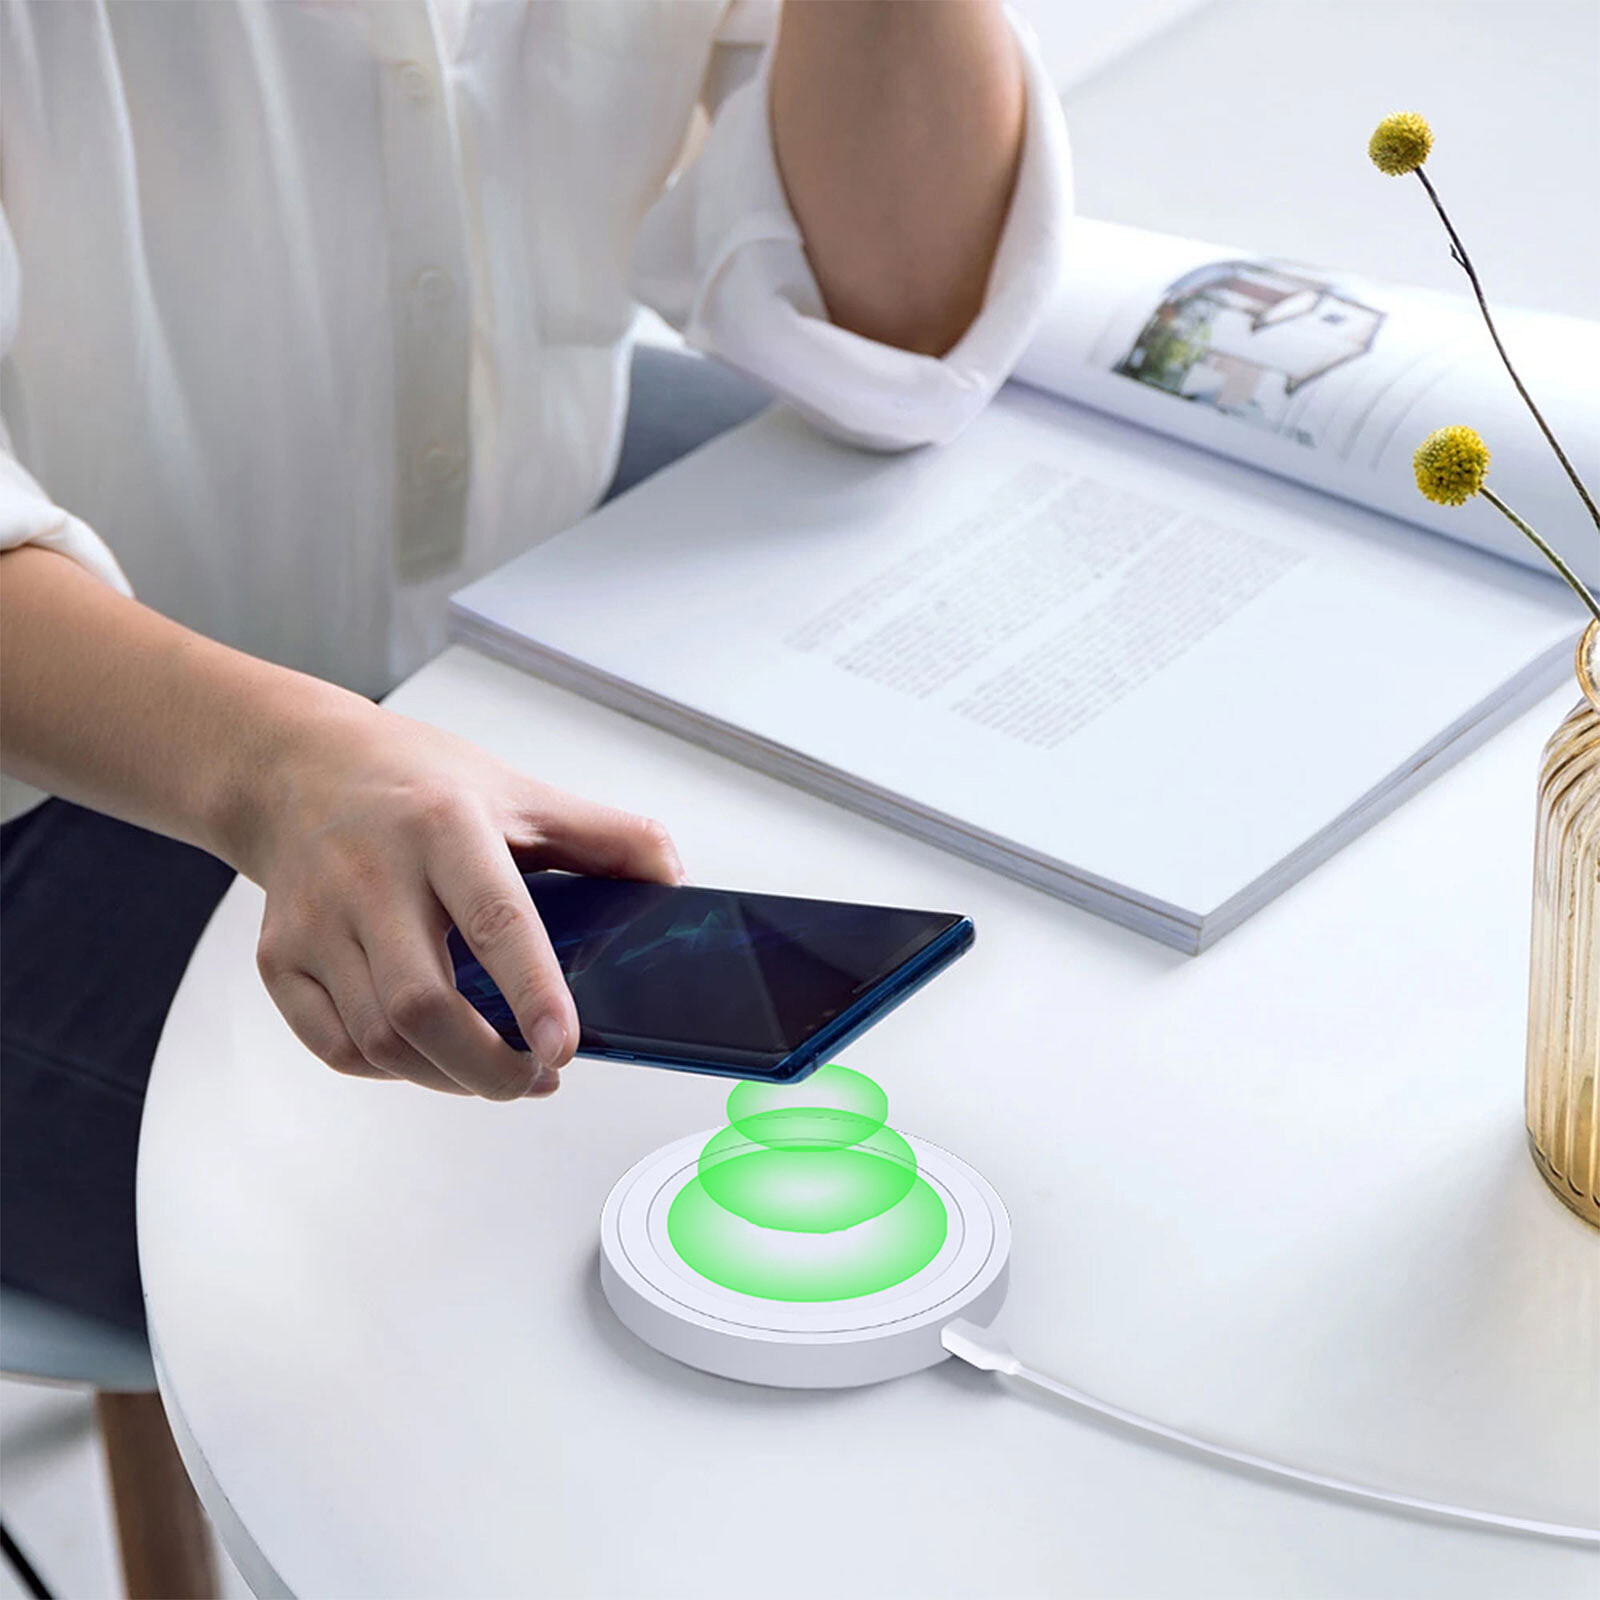 Akashi Chargeur Eco Rapide Sans Fil Induction 10W (Blanc) - Chargeur  téléphone - Garantie 3 ans LDLC